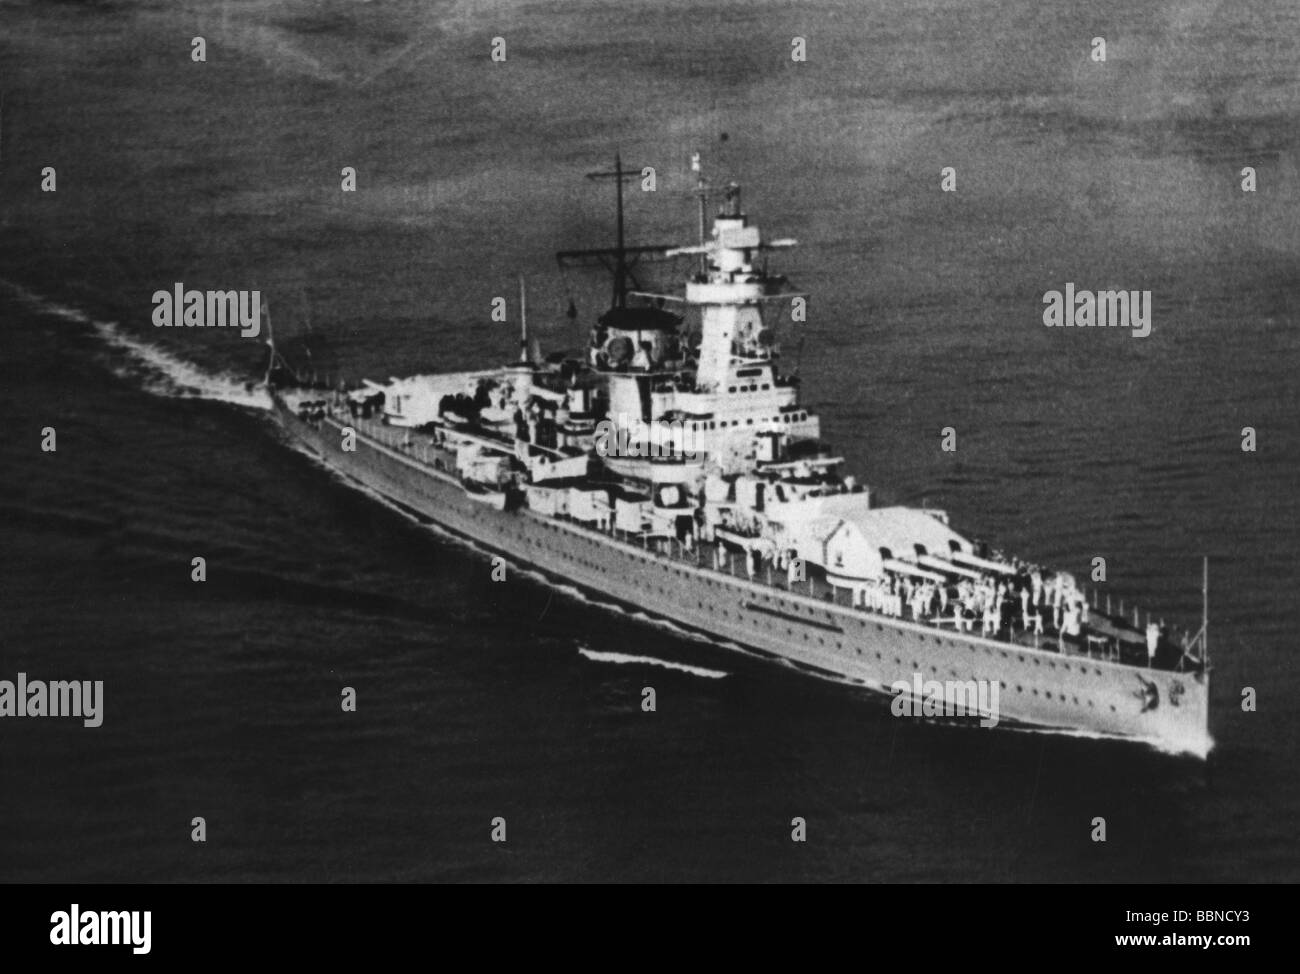 Eventos, Segunda Guerra Mundial / Segunda Guerra Mundial, guerra naval, acorazado de bolsillo alemán 'Admiral Graf Spee' en el Canal de la Mancha, a finales de agosto de 1939, fotografía aérea, Foto de stock